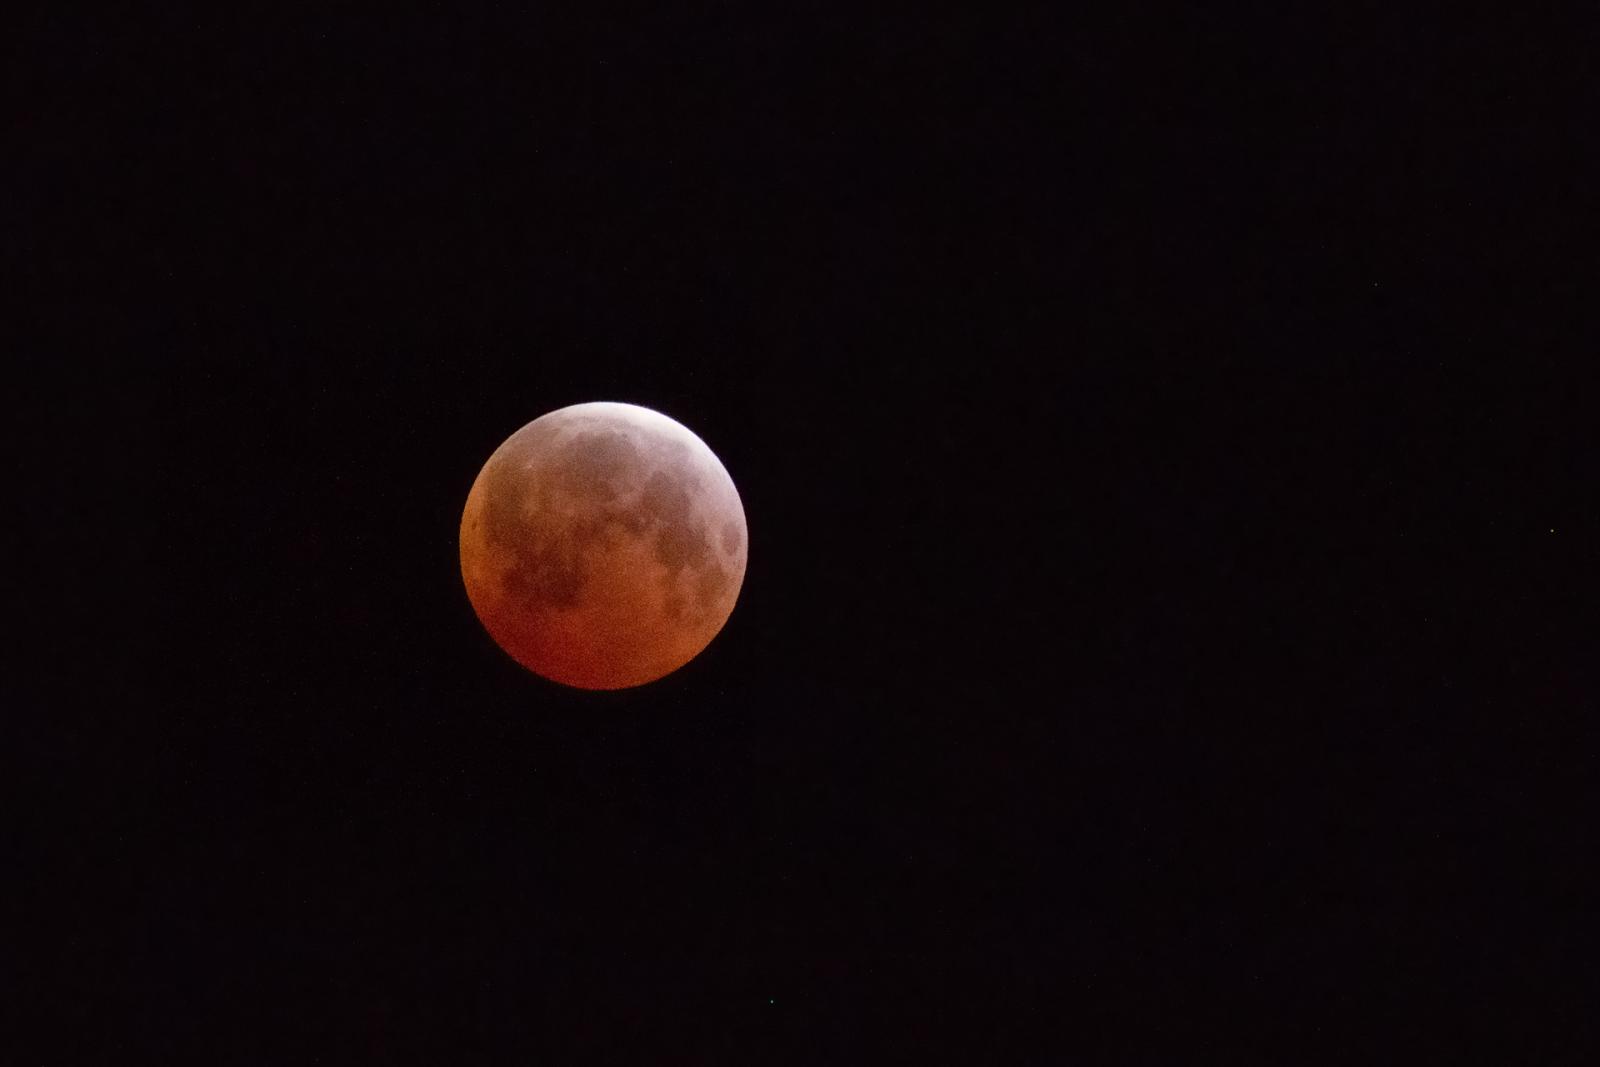 Lunar Eclipse SE Washington State Lunar Observing and Imaging